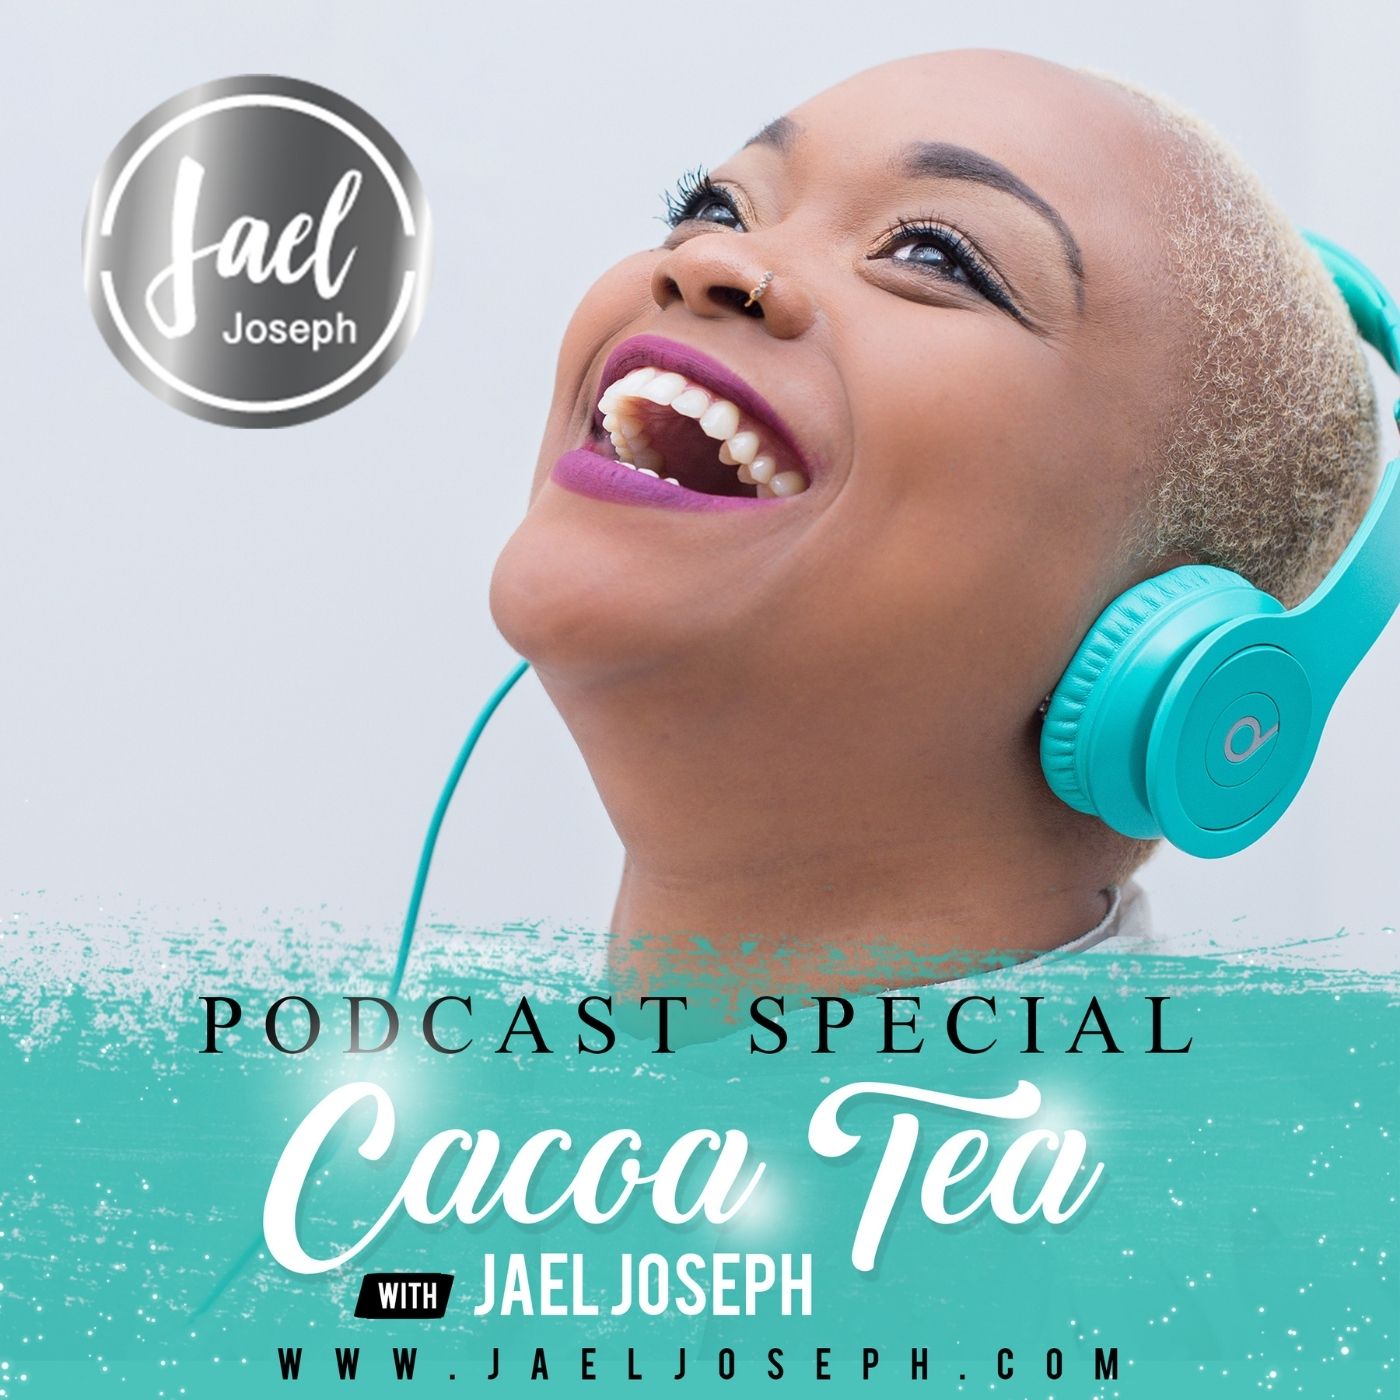 Cacoa Tea with Jael Joseph